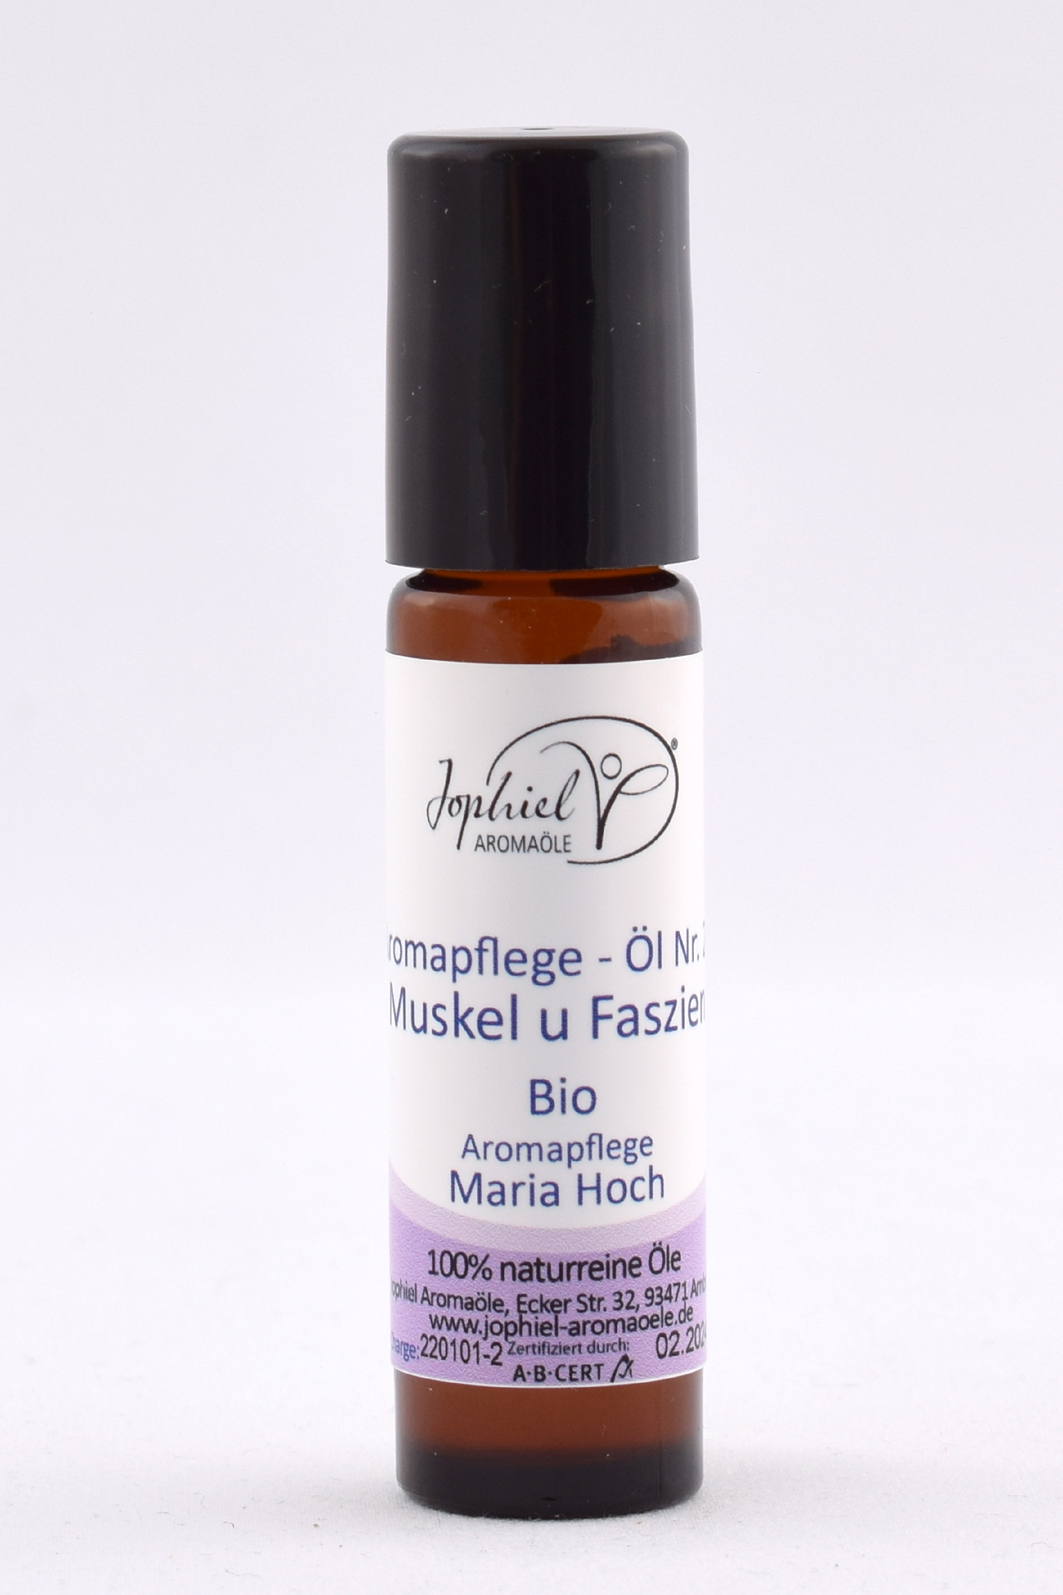 Aromapflege-Öl Nr. 02 Muskeln und Faszien im Roll-on Bio 10 ml 